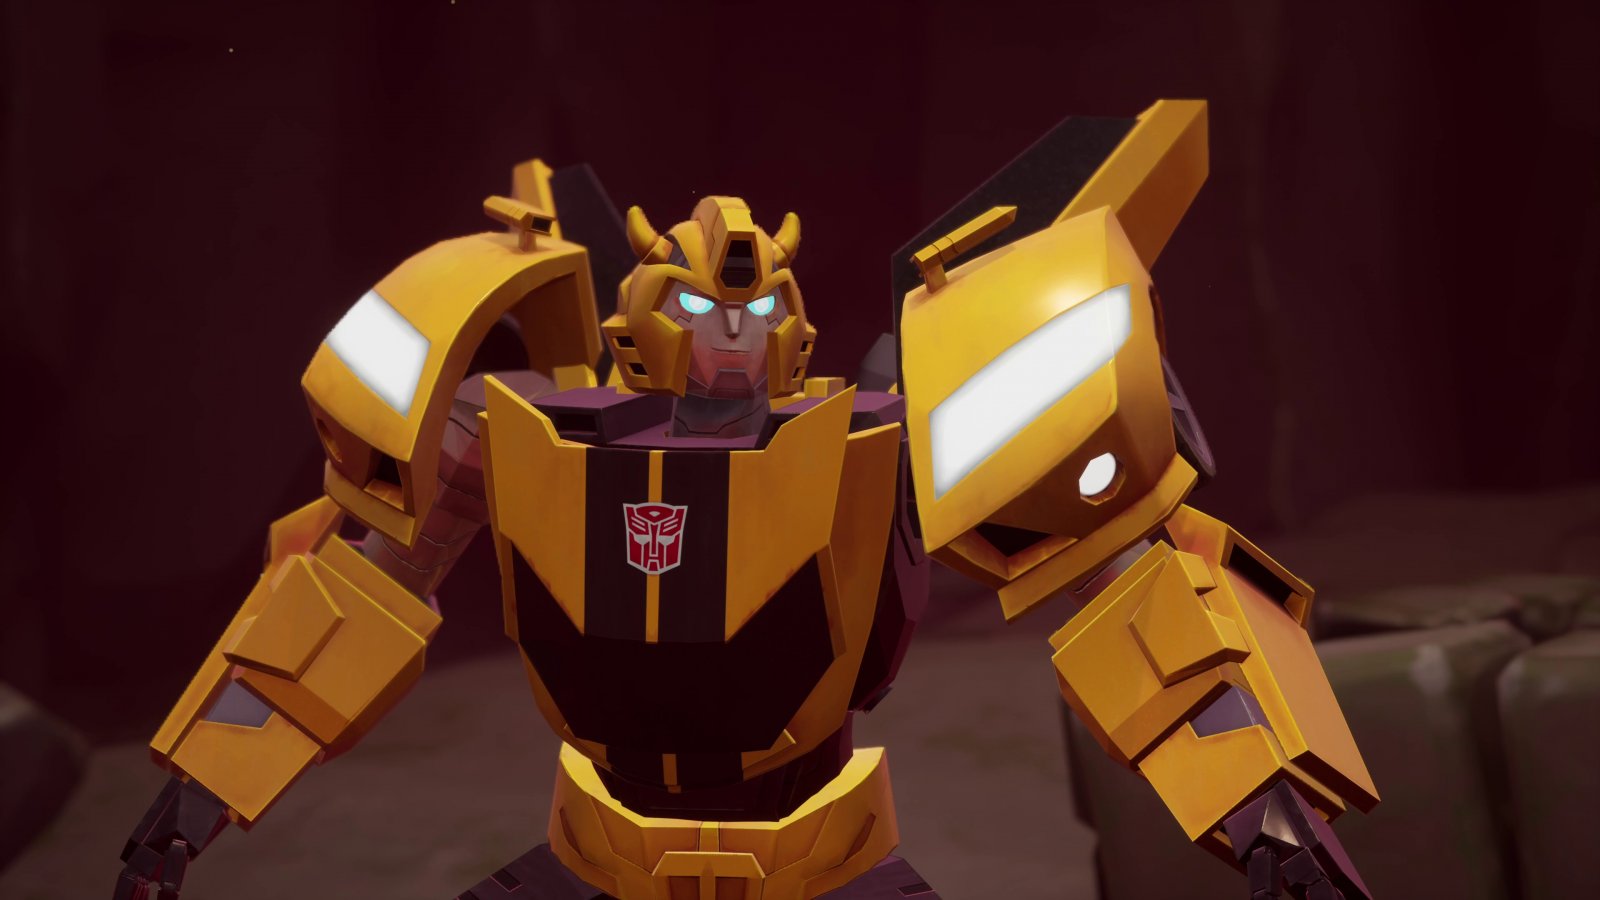 Transformers: EarthSpark - In missione disponibile da oggi su PC e console